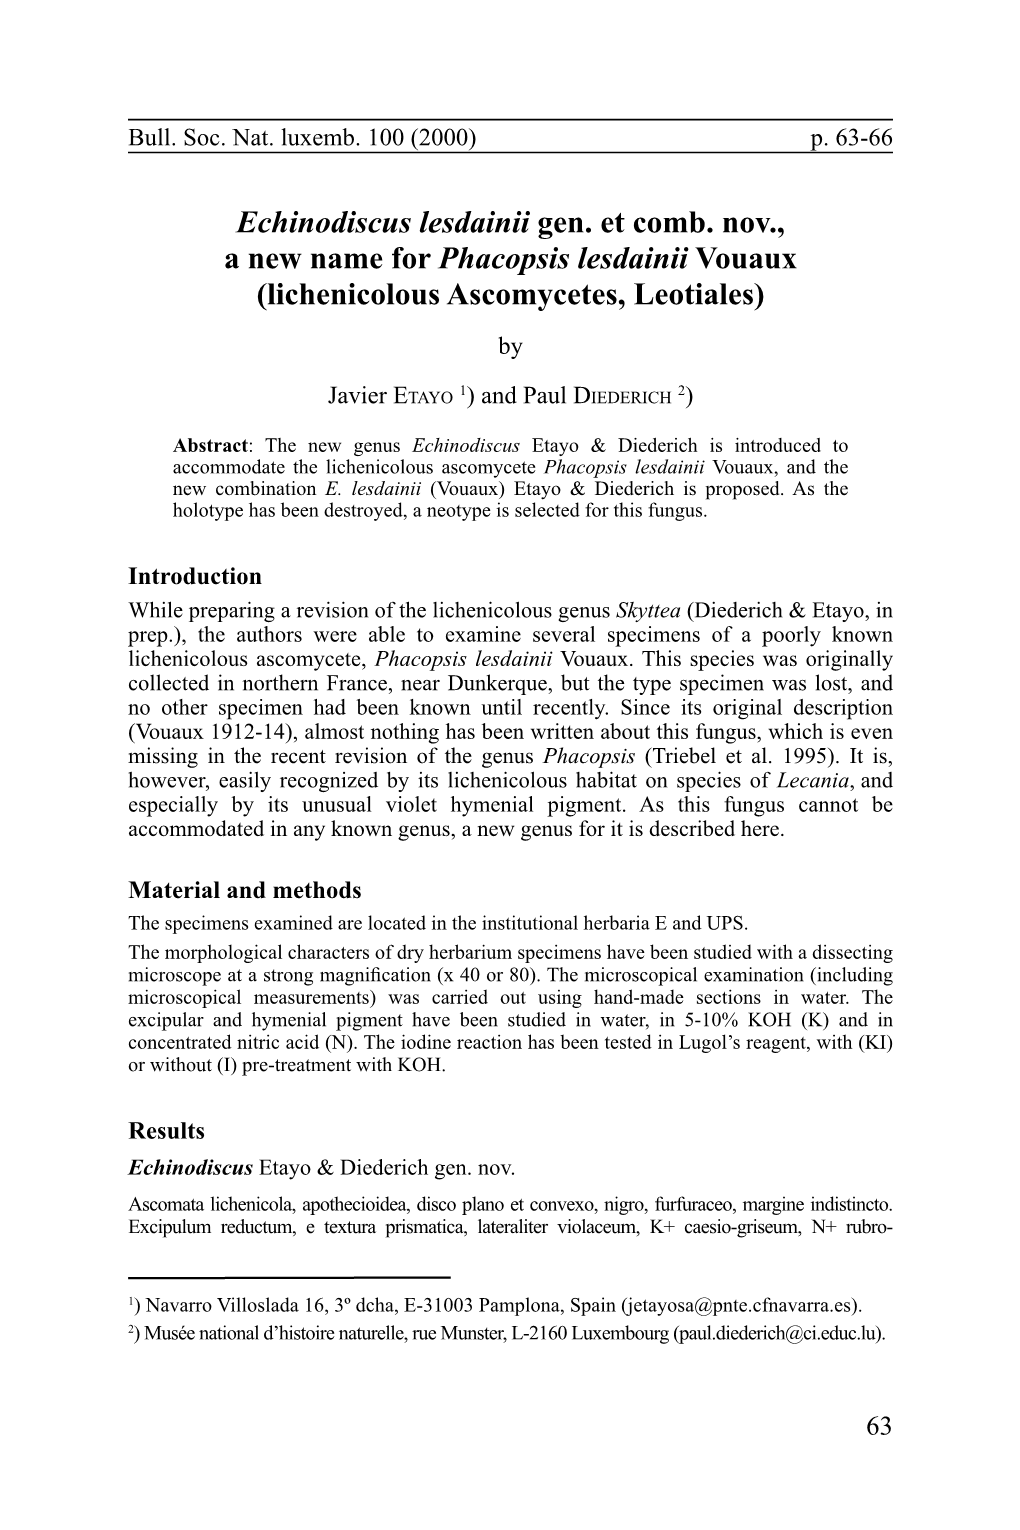 Echinodiscus Lesdainii Gen. Et Comb. Nov., a New Name for Phacopsis Lesdainii Vouaux (Lichenicolous Ascomycetes, Leotiales) By